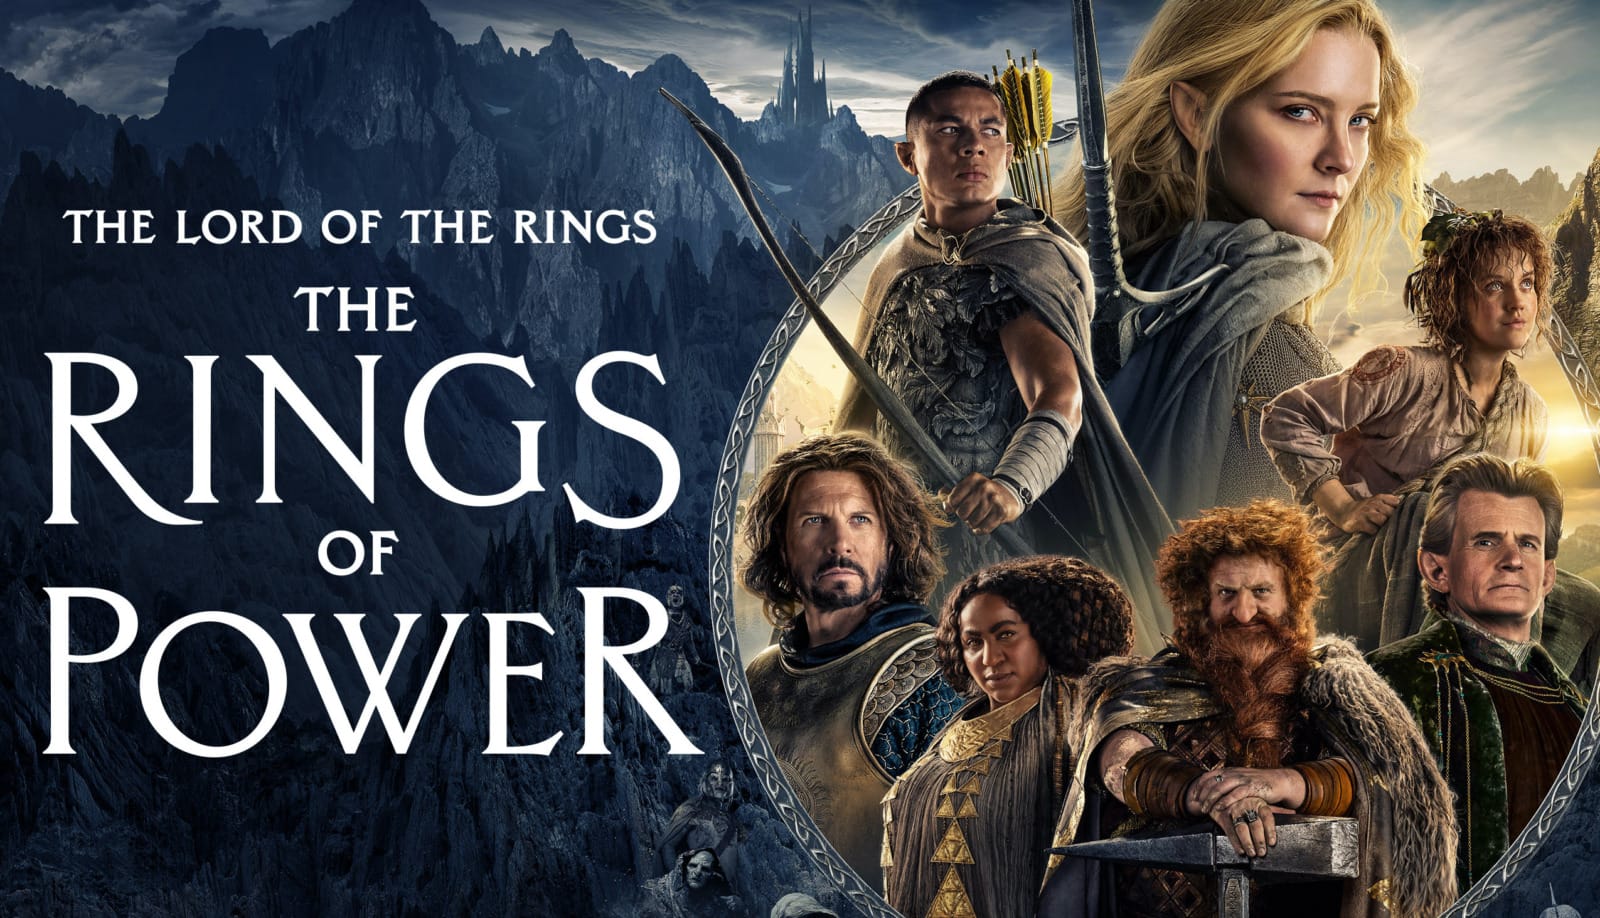 อันดับ 1 "Lord of the Rings: The Rings of Power" ตอนละ 2.07 พันล้านบาท